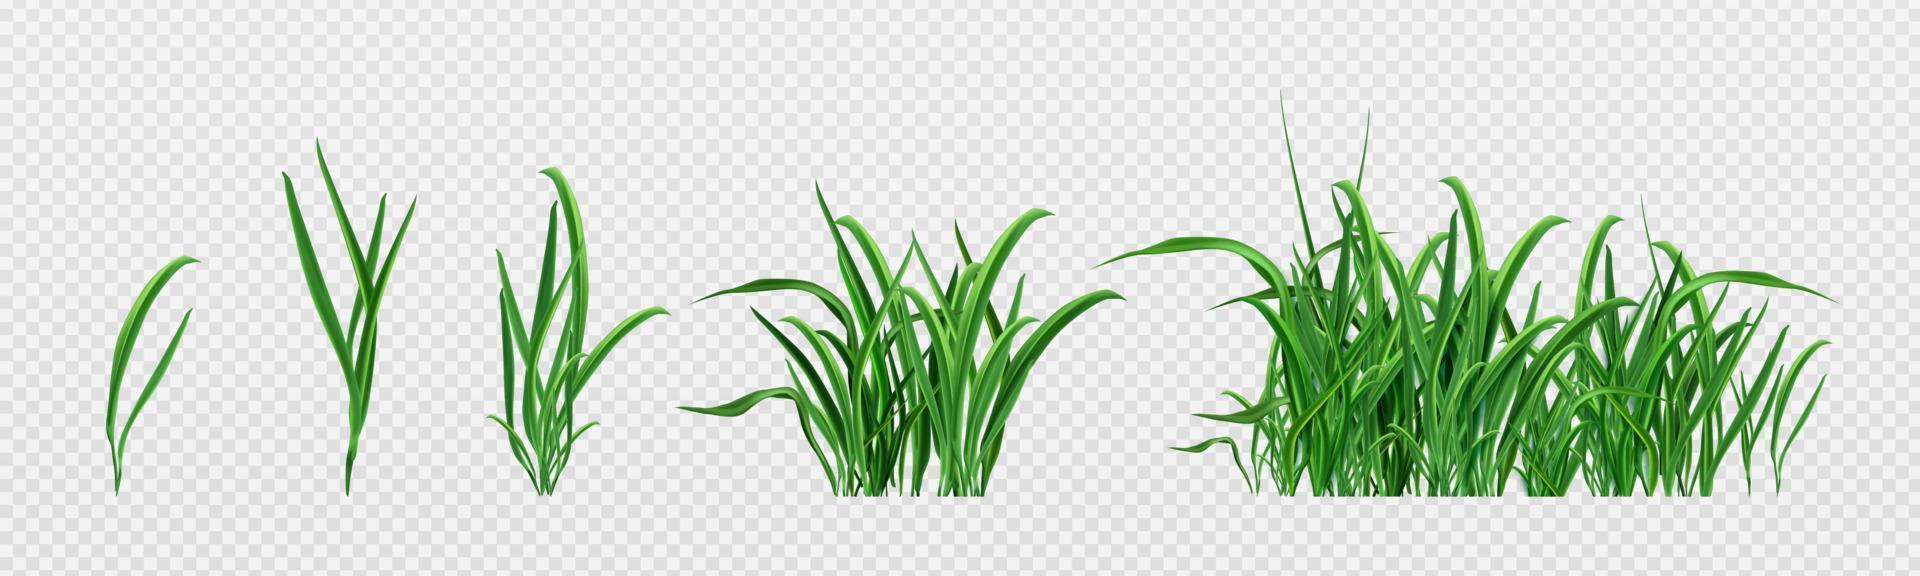 réaliste ensemble de vert herbe choux vecteur